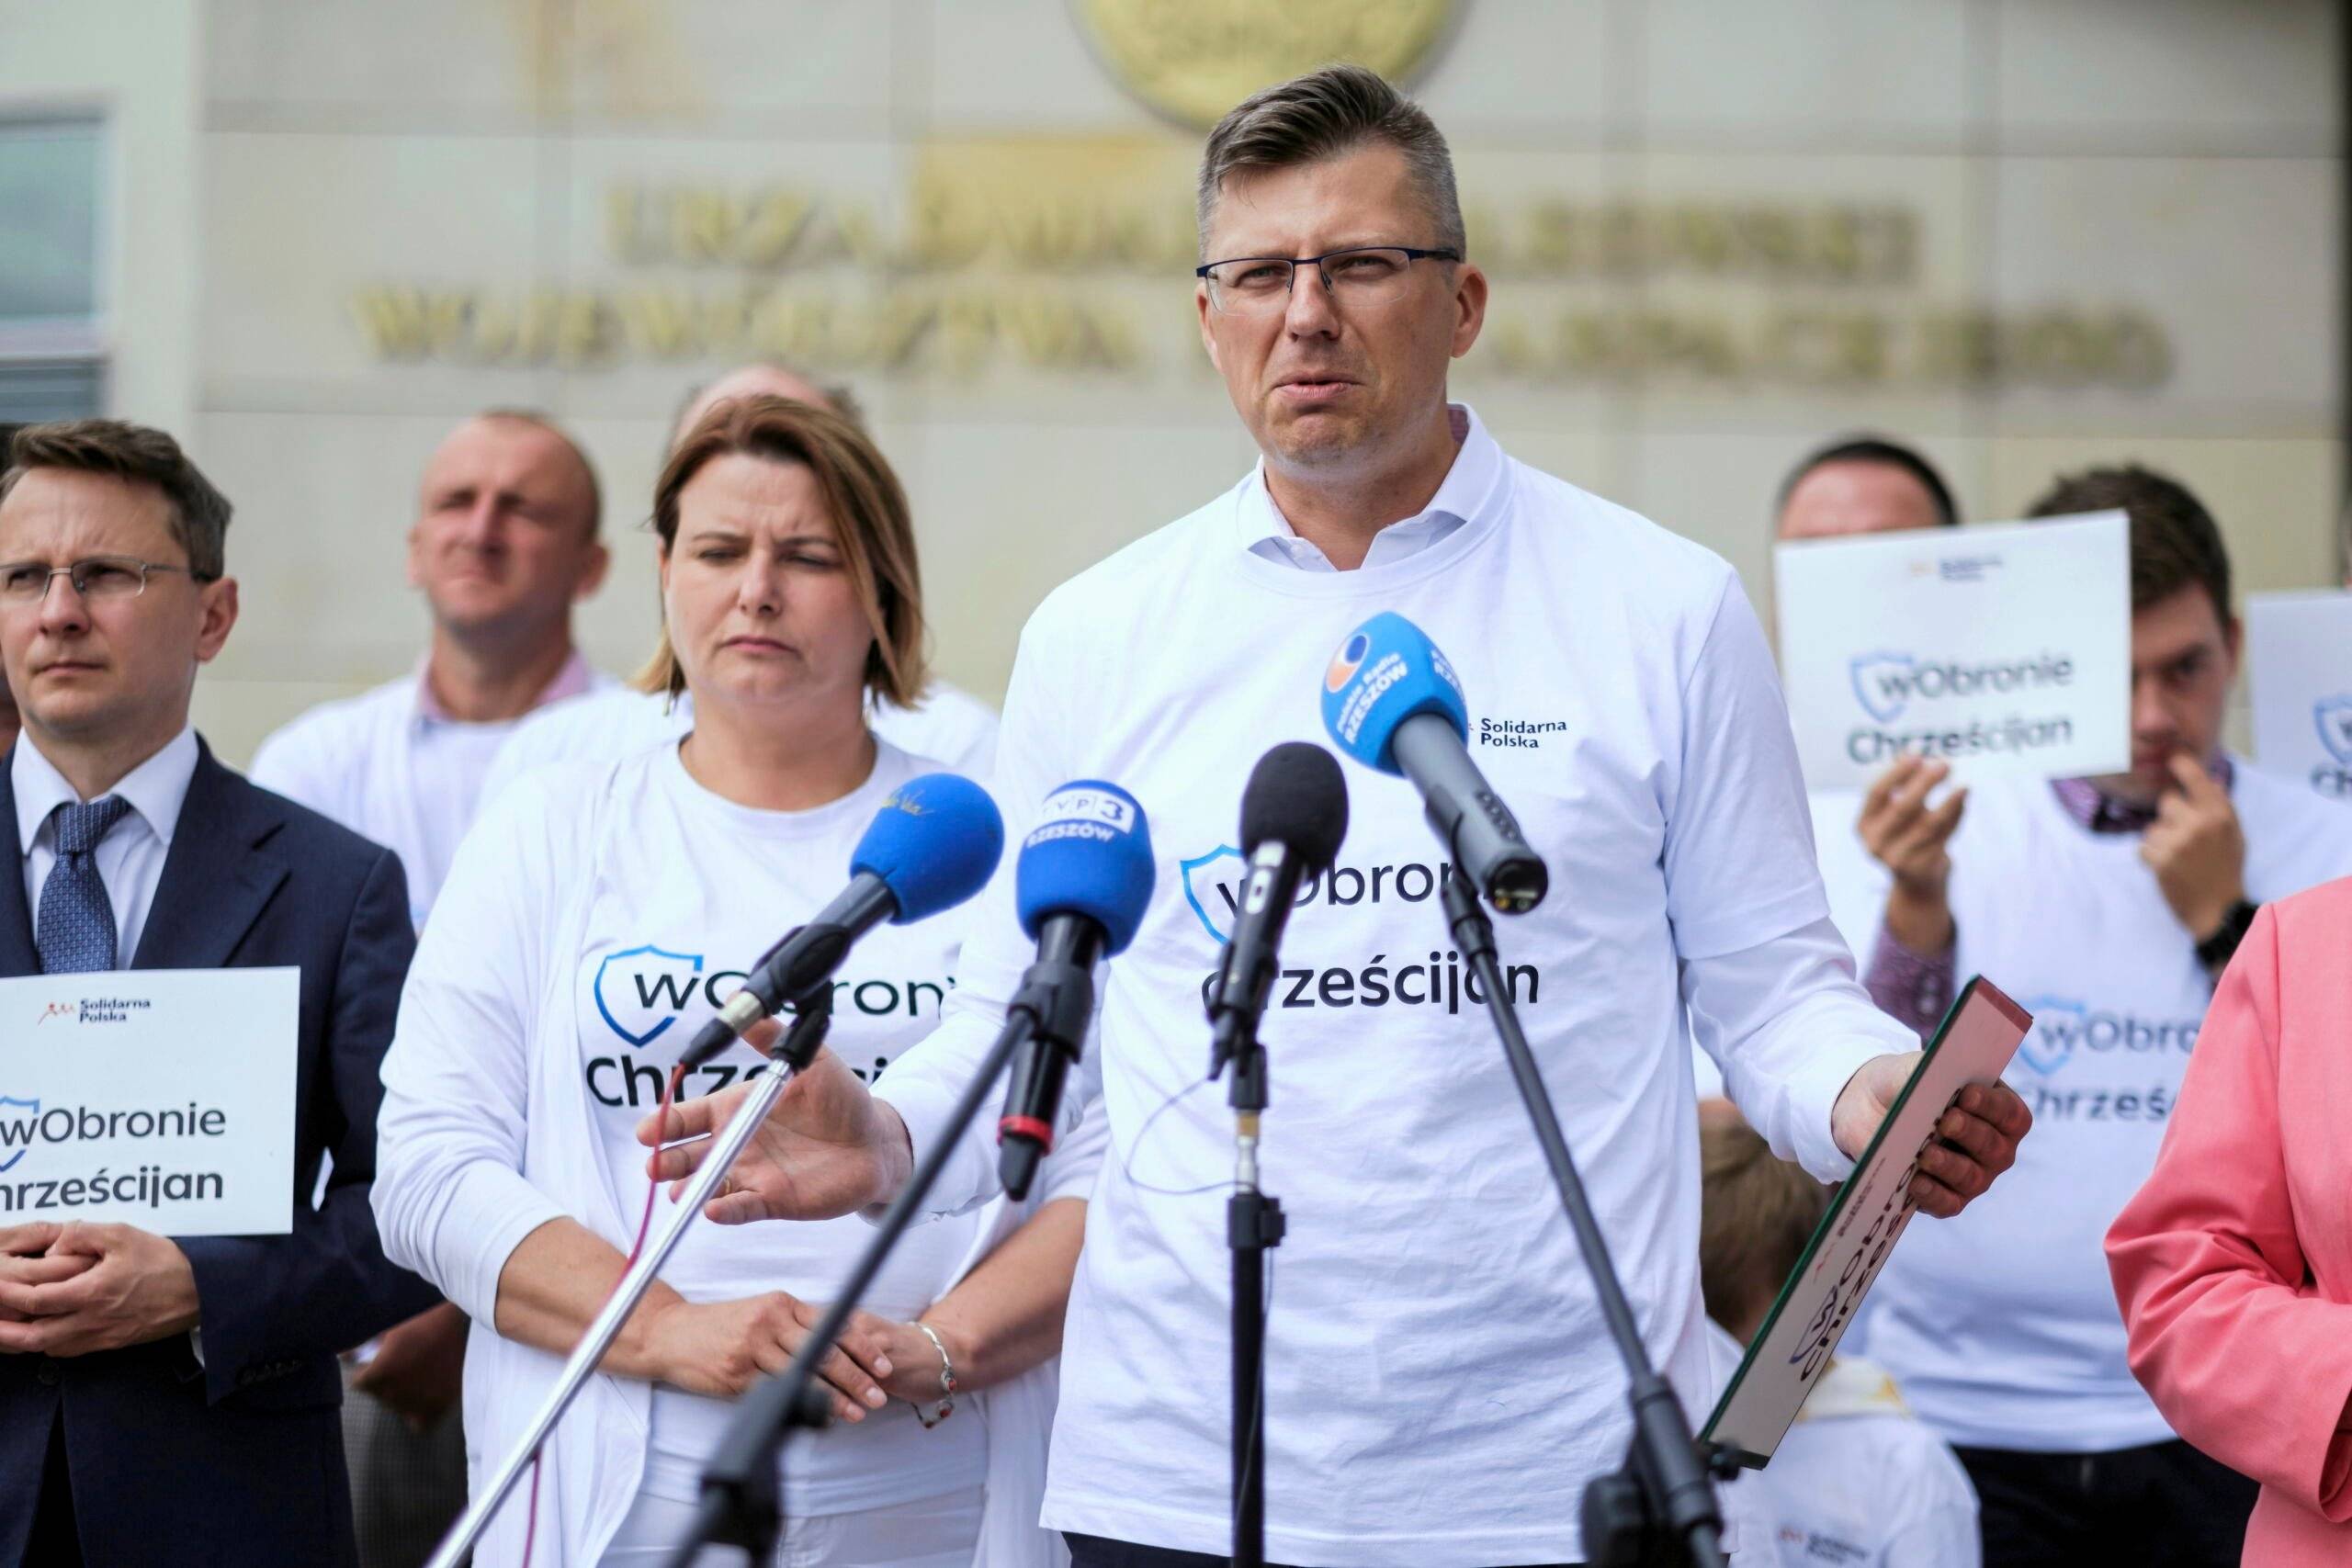 Marcin Warchoł w koszulce z napisem "w obronie chrześcijan"